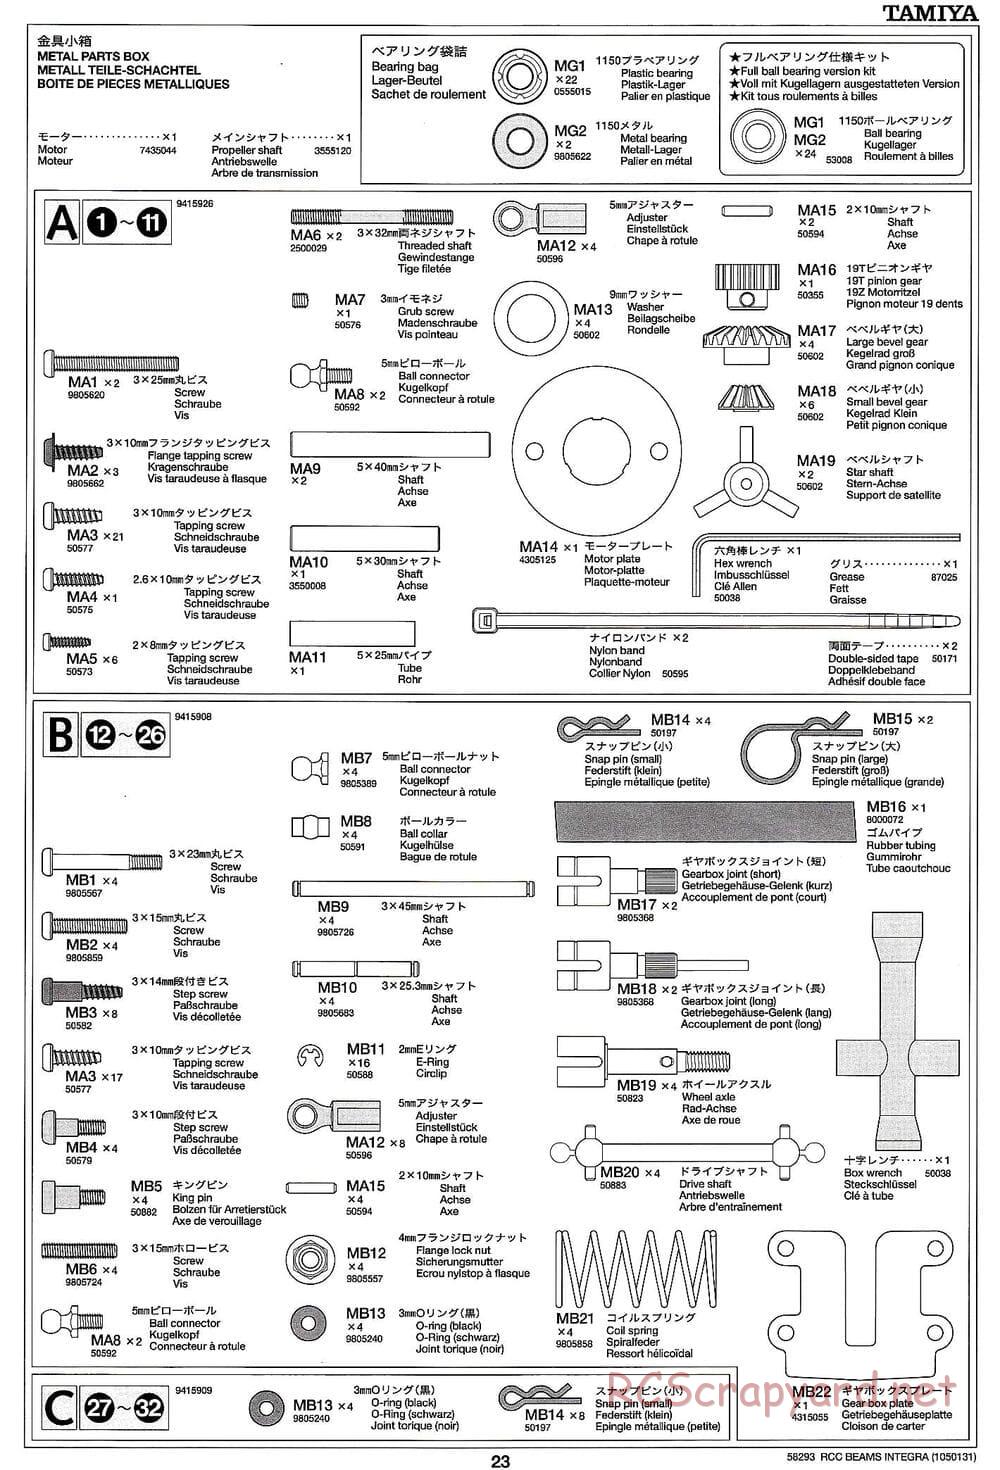 Tamiya - Beams Integra - TL-01 LA Chassis - Manual - Page 23